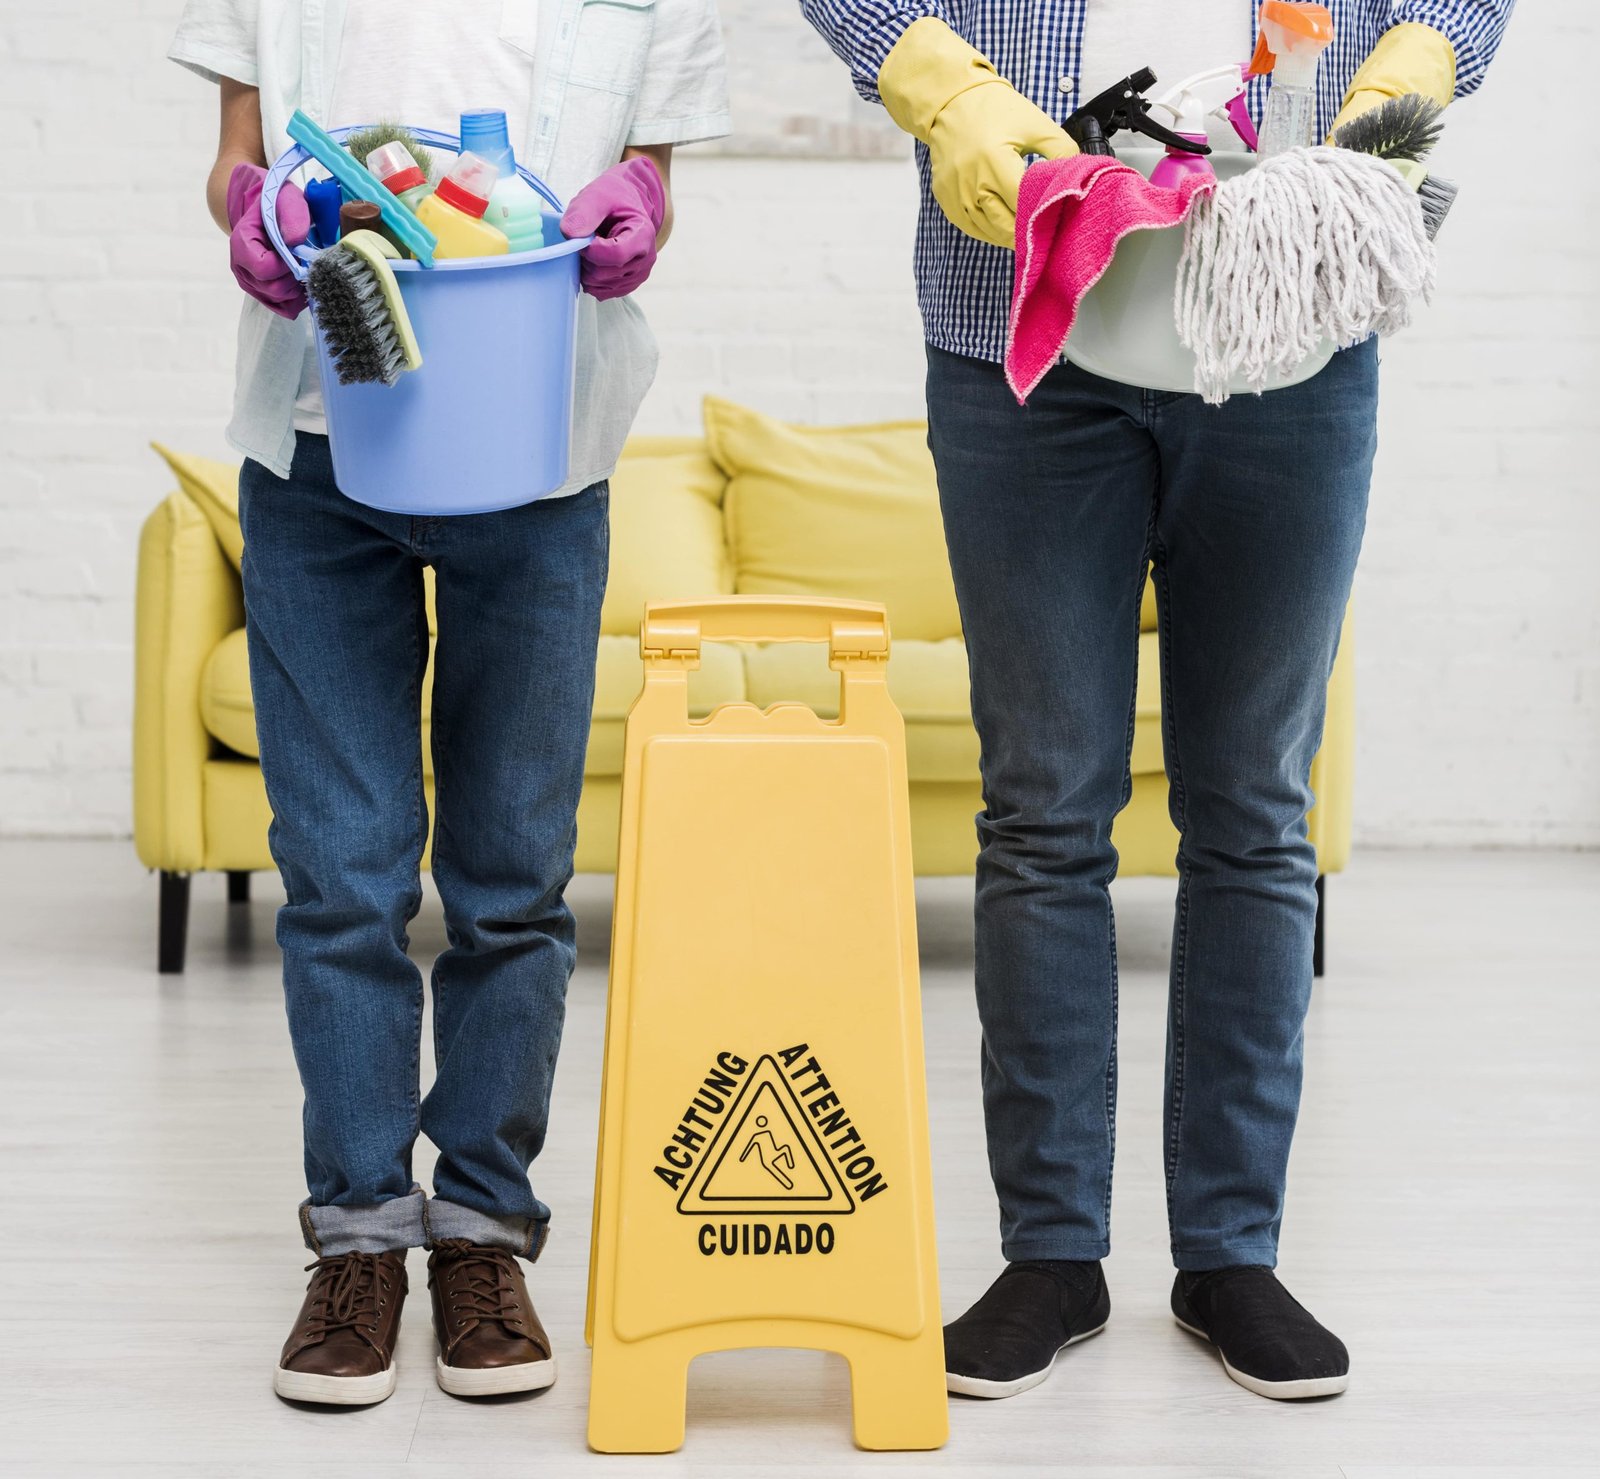 اختيار افضل شركة نظافة بالرياض – دليلك الشامل